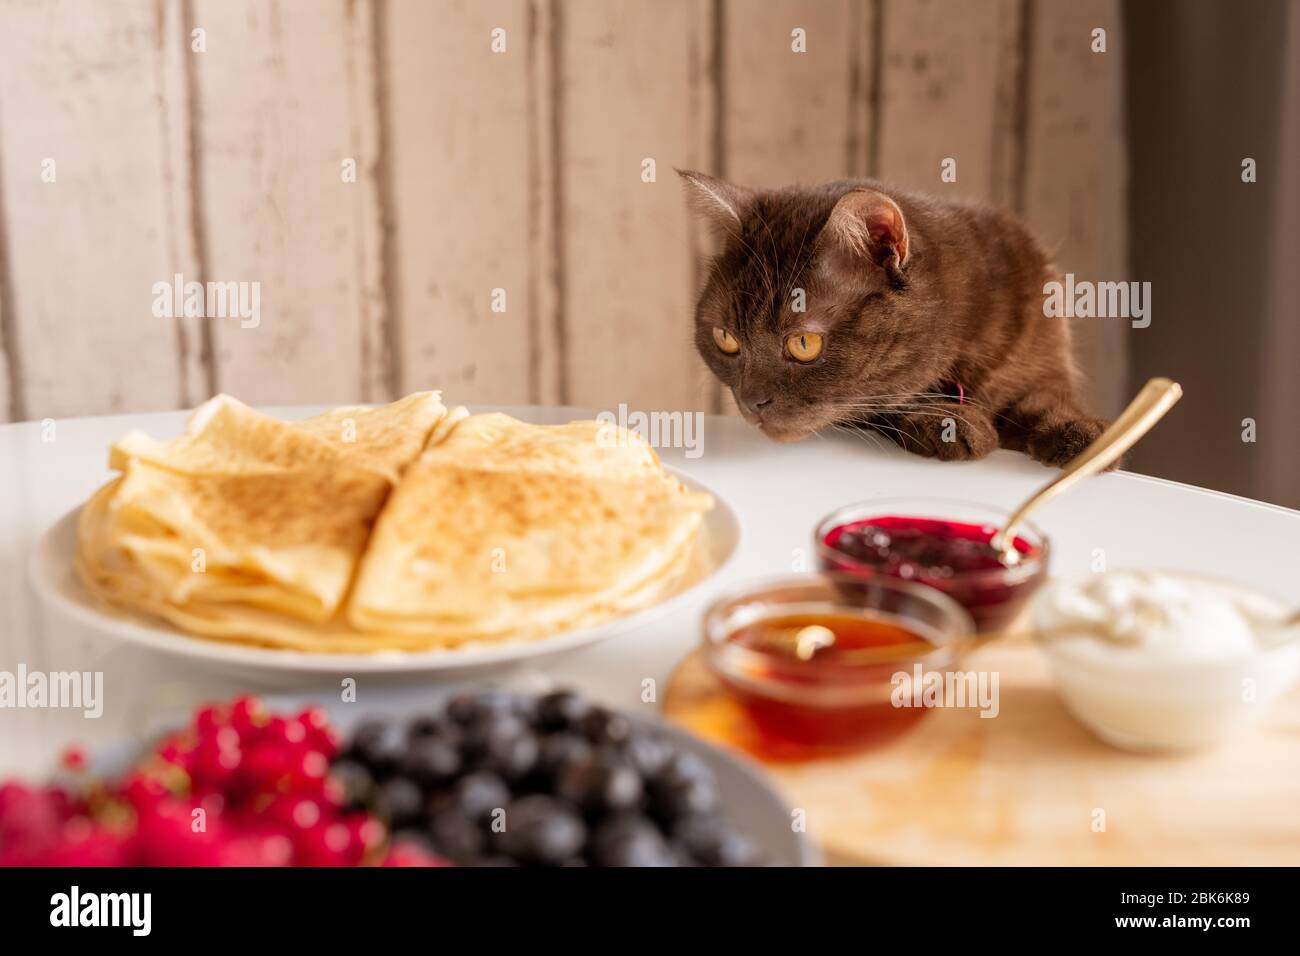 Curieux chat brun qui saute des crêpes appétissantes tout en se pendant sur la table servi avec la nourriture maison pour le petit déjeuner dans la cuisine Banque D'Images